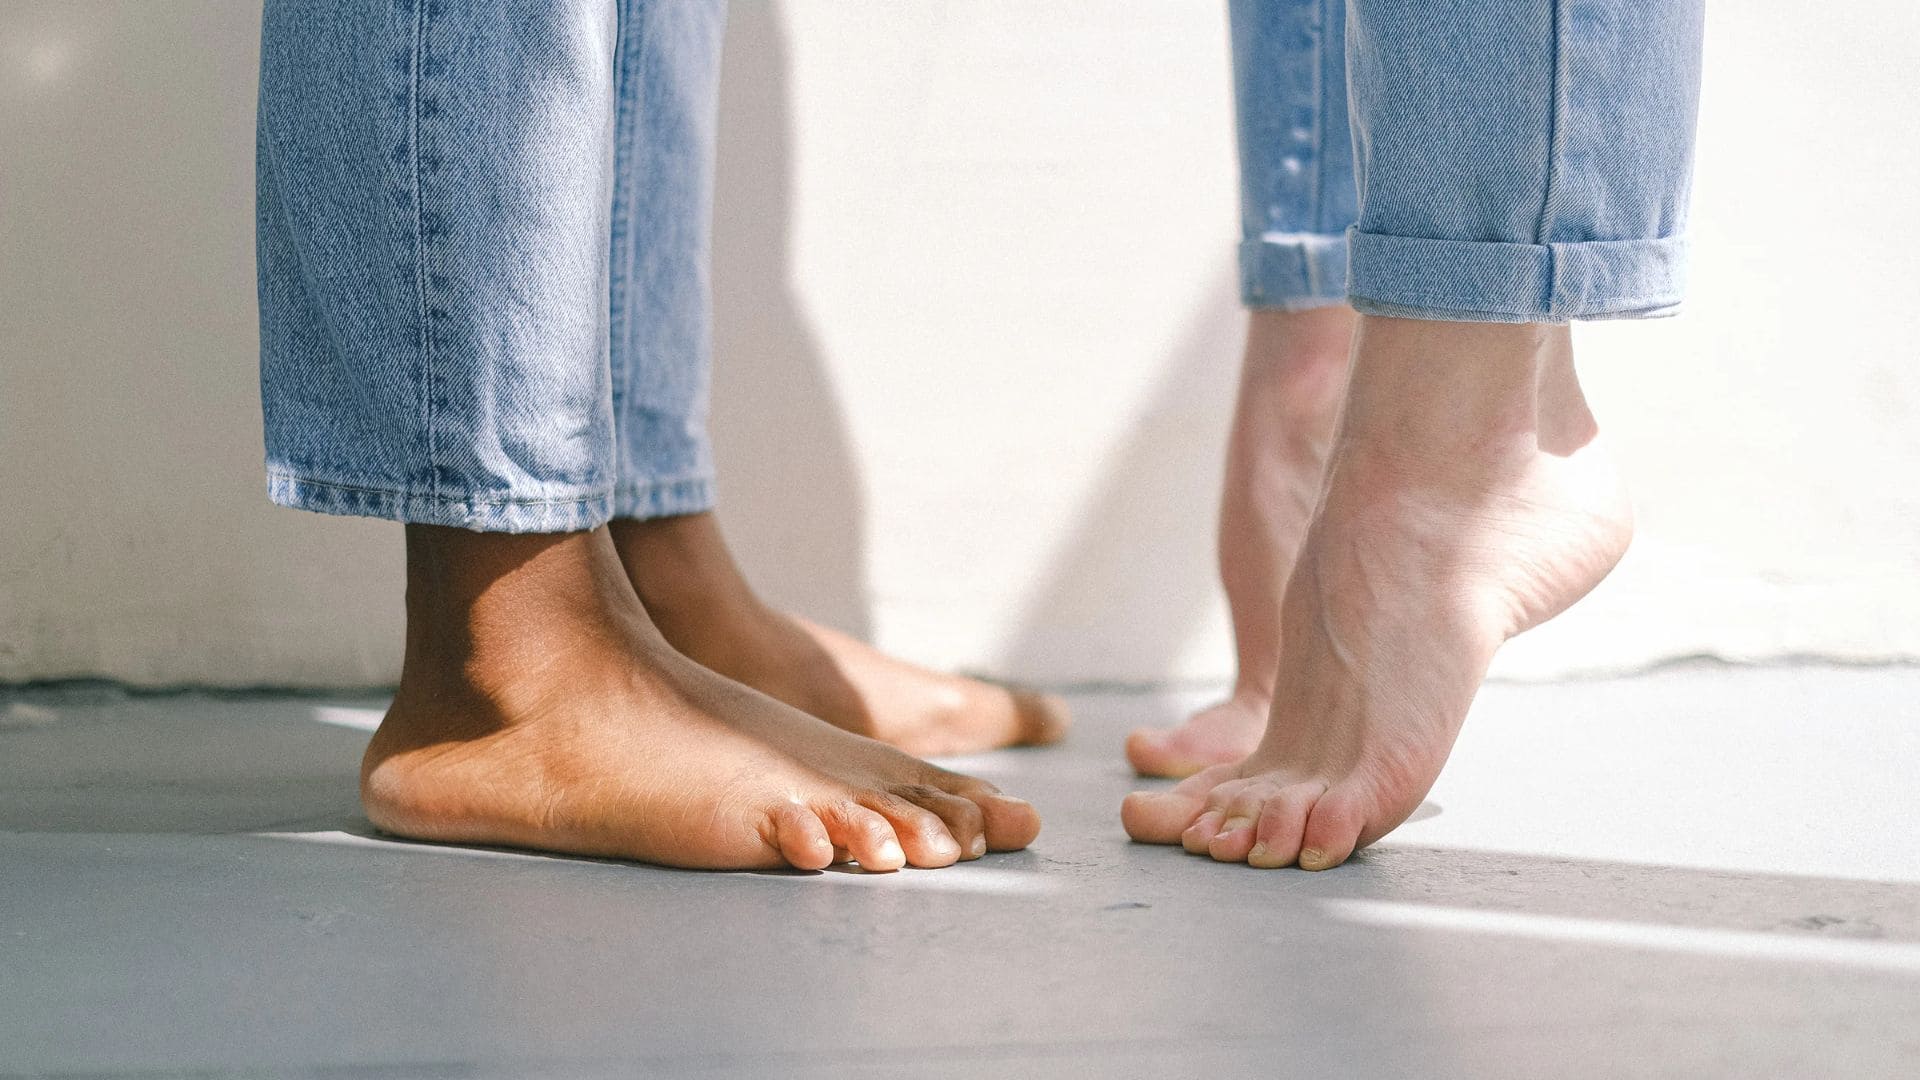 Pies caminando sobre revestimiento decorativo para conocer los beneficios de caminar descalzo sobre microcemento.